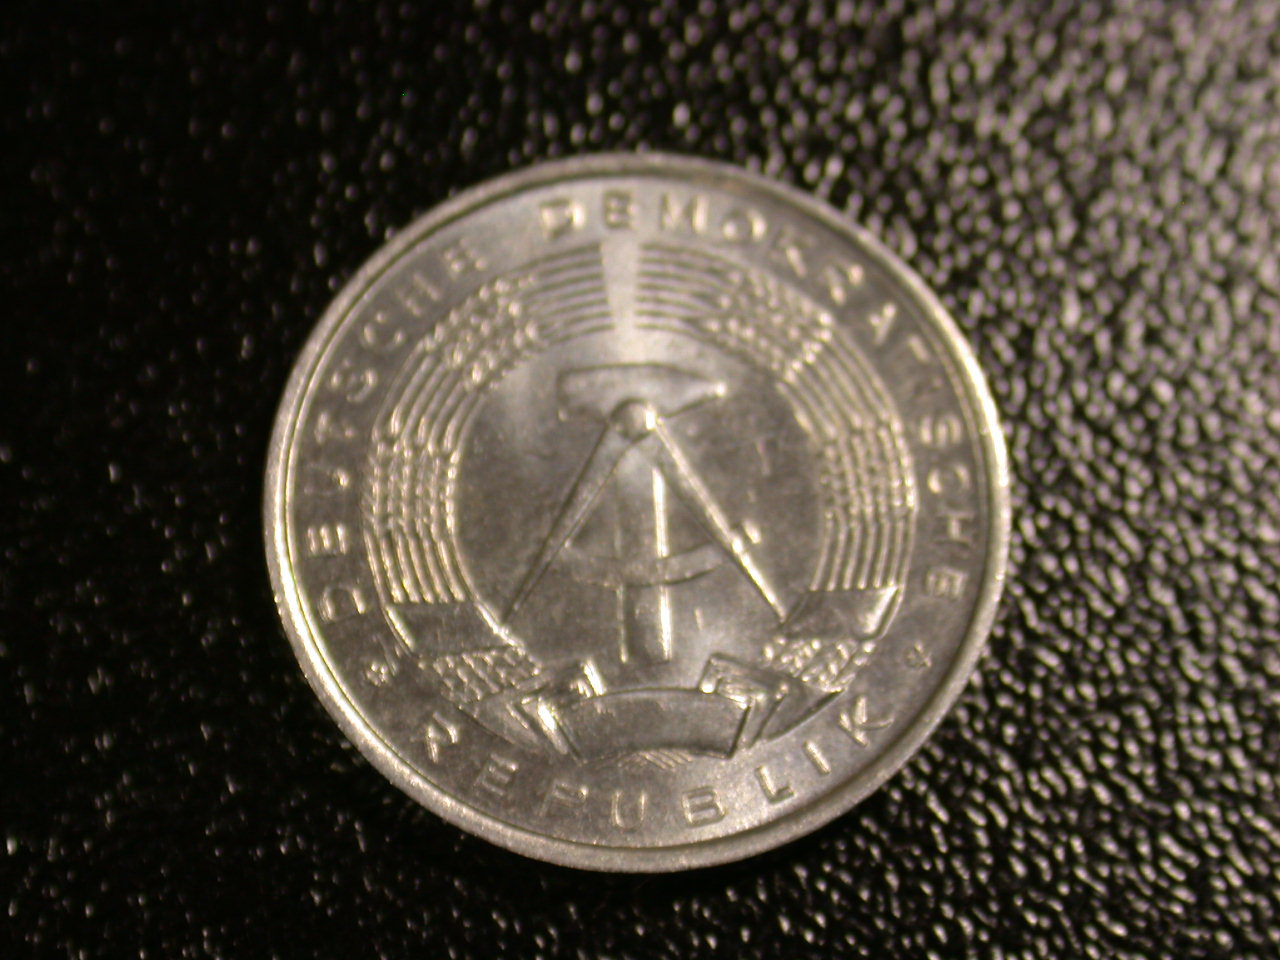  12045  DDR   1 Pfennig  1960  in f.st/st   